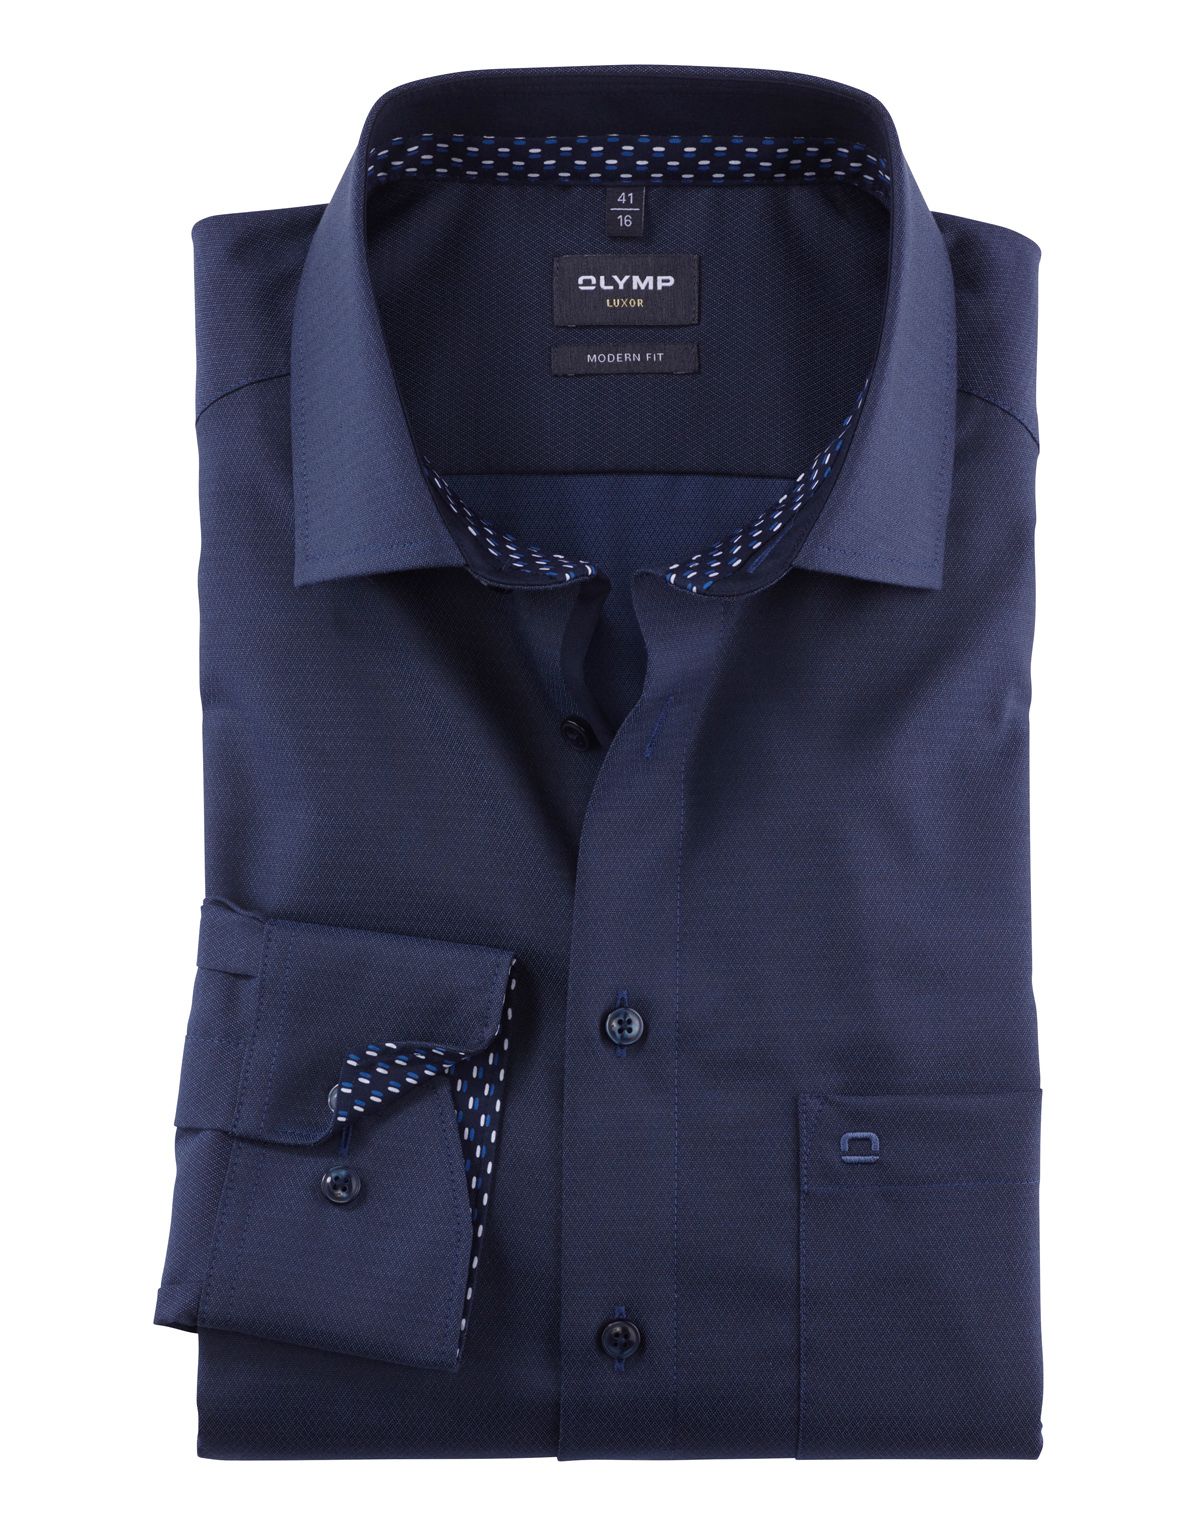 Рубашка мужская OLYMP Luxor, modern fit, фактурная ткань, рост до 176